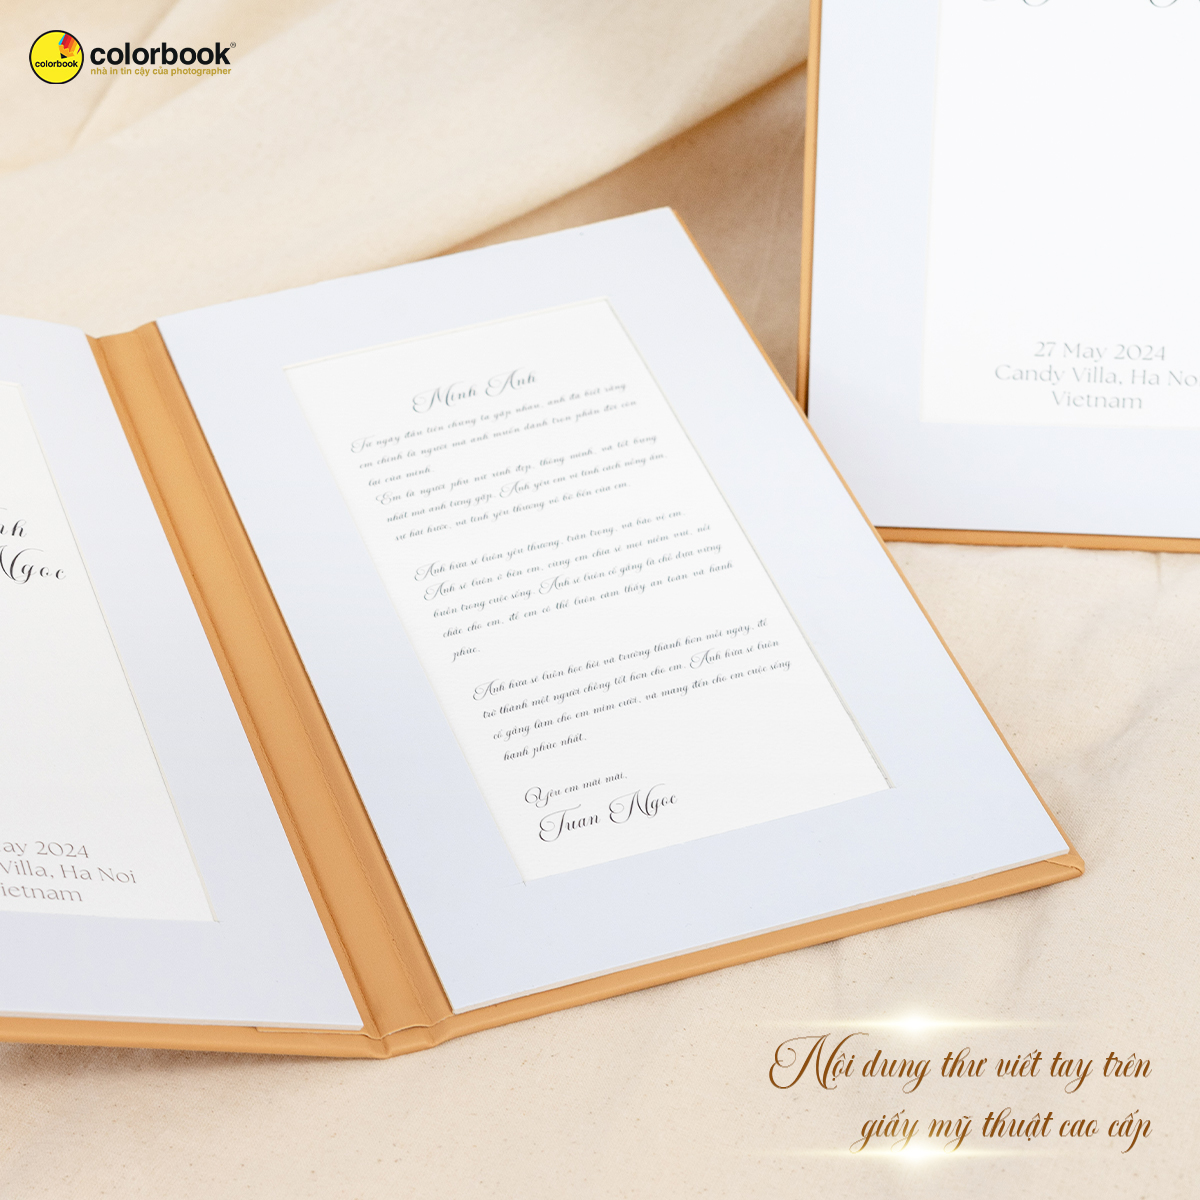 Wedding vows Nội dung thư viết tay trên giấy mỹ thuật cao cấp